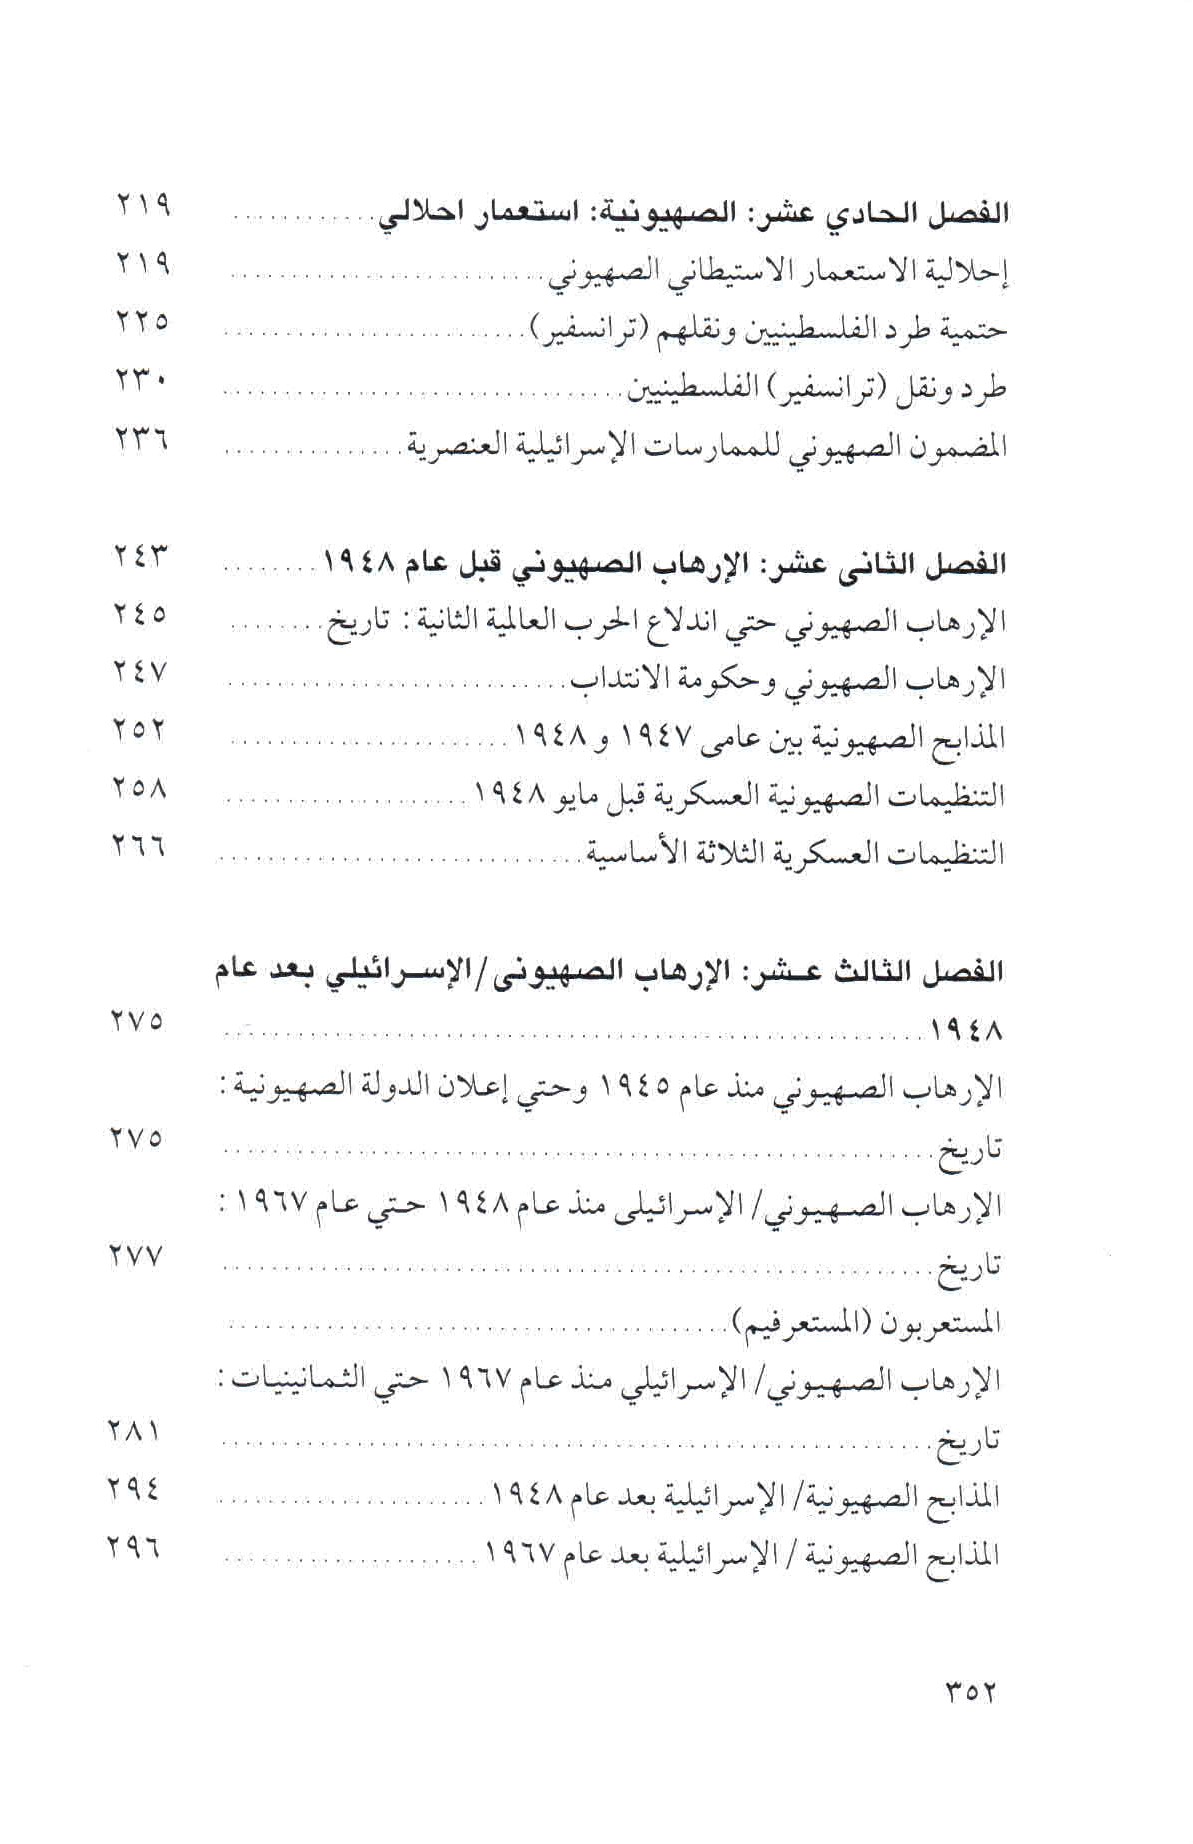  قائمة محتويات كتاب الصهيونية والعنف ص. 352.